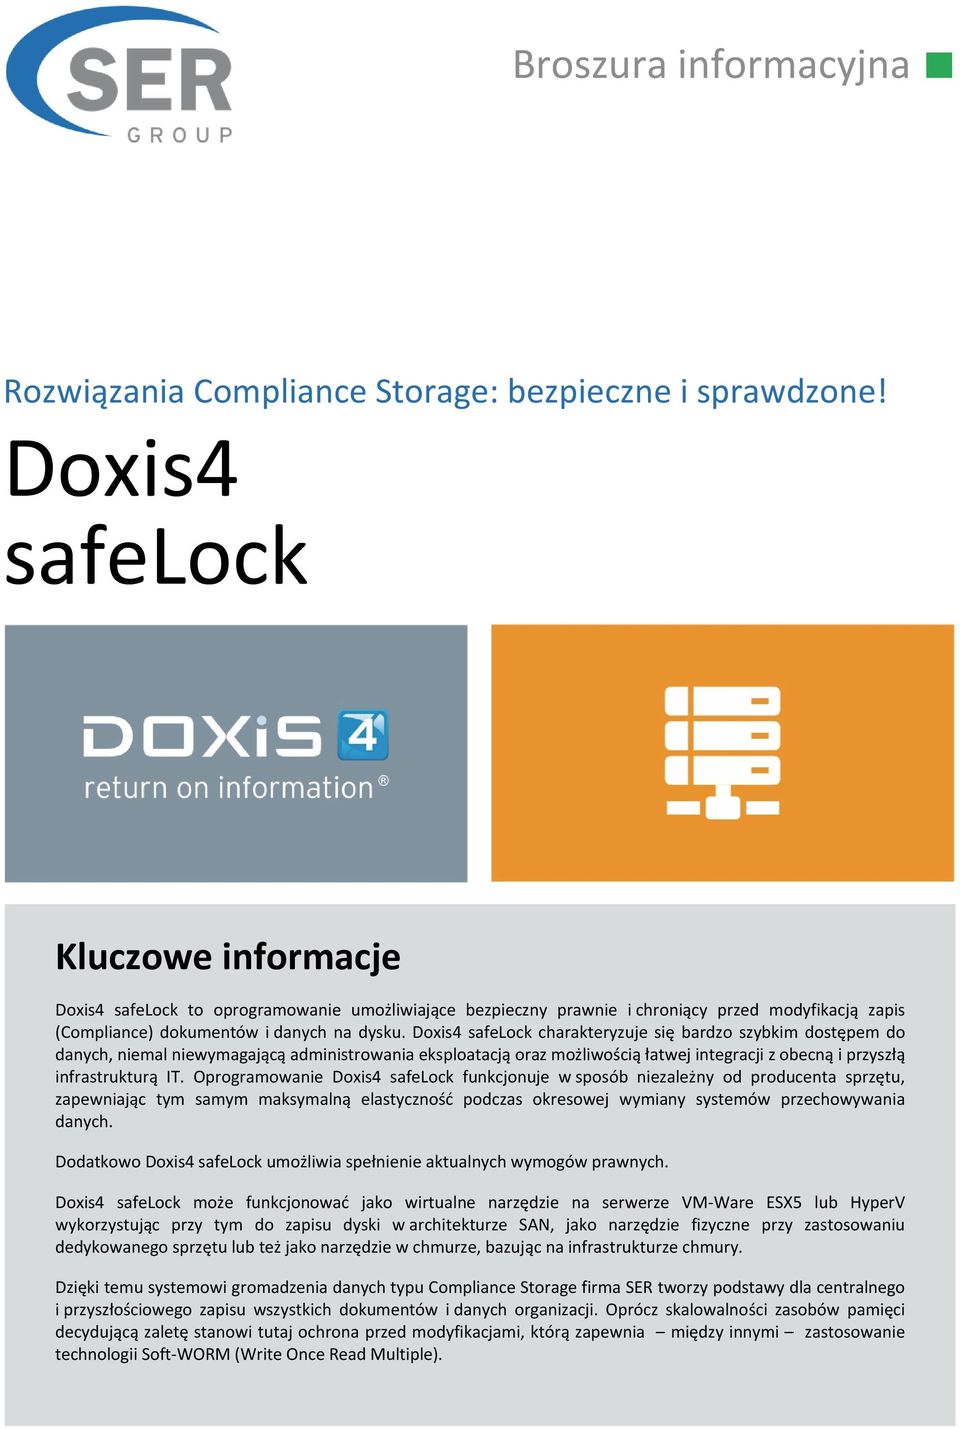 Doxis4 safelock charakteryzuje się bardzo szybkim dostępem do danych, niemal niewymagającą administrowania eksploatacją oraz możliwością łatwej integracji z obecną i przyszłą infrastrukturą IT.